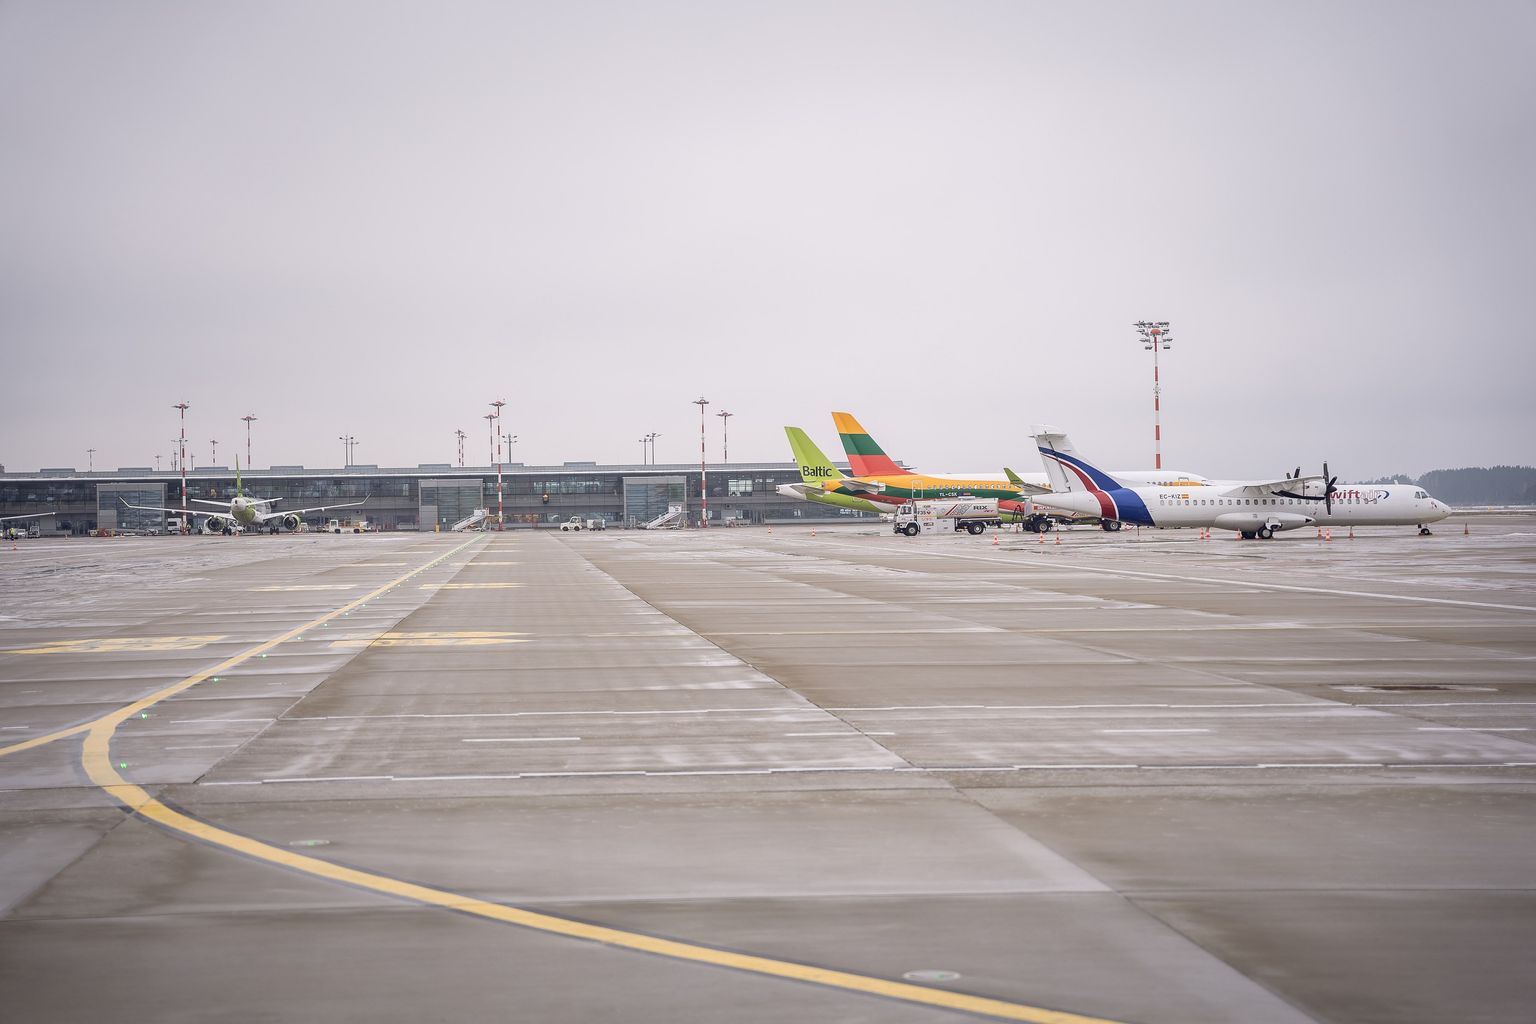 Tiešo pasažieru skaits lidostā “Rīga” janvārī praktiski atgriezies pirmspandēmijas apjomā